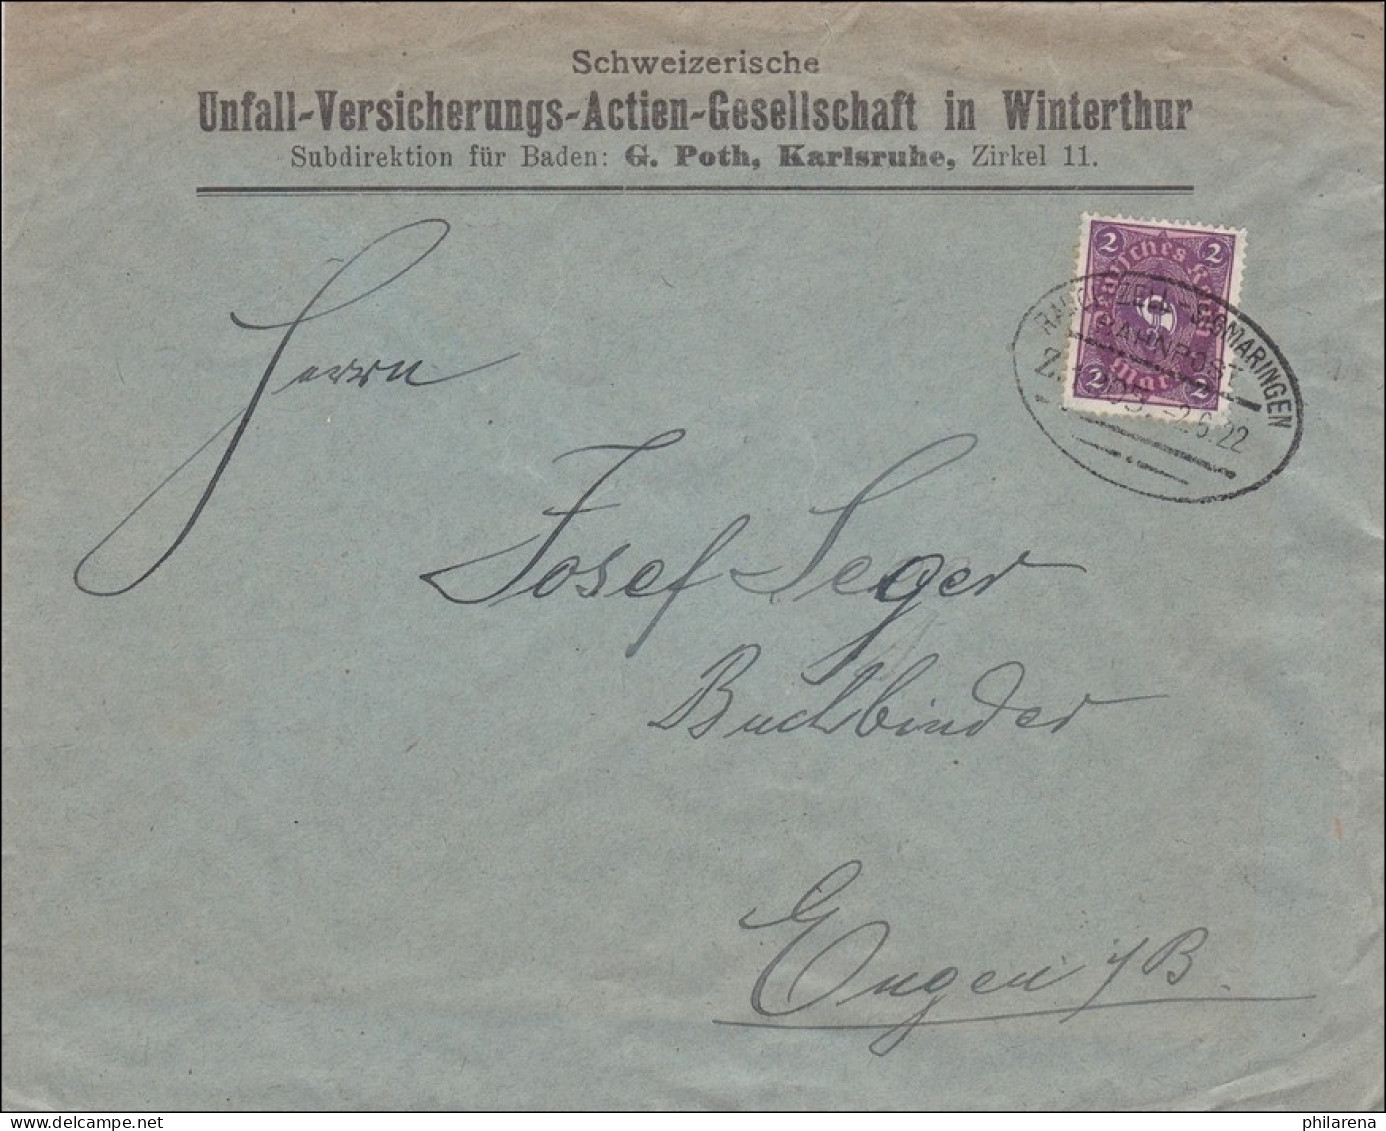 Bahnpost: Brief Von Karlsruhe Mit Zugstempel Radolfzell-Sigmaringen 1922 - Briefe U. Dokumente